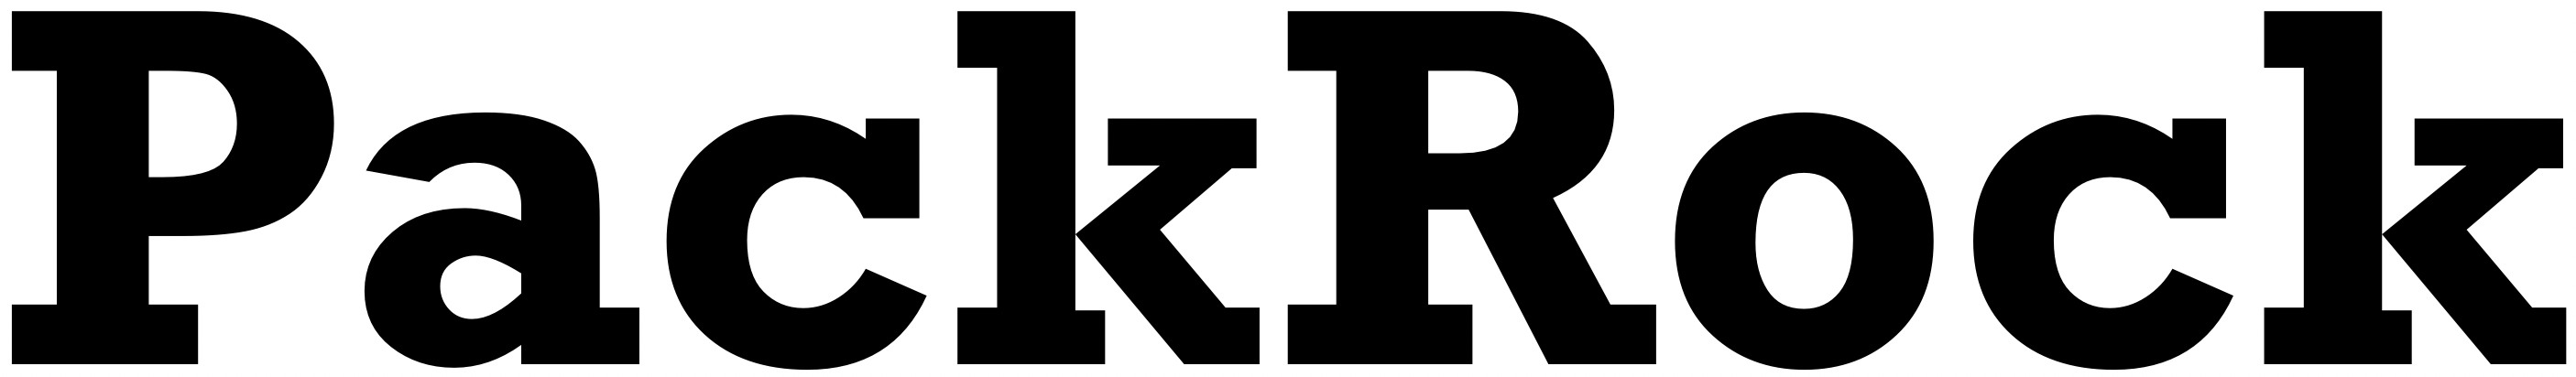 Packrock logo